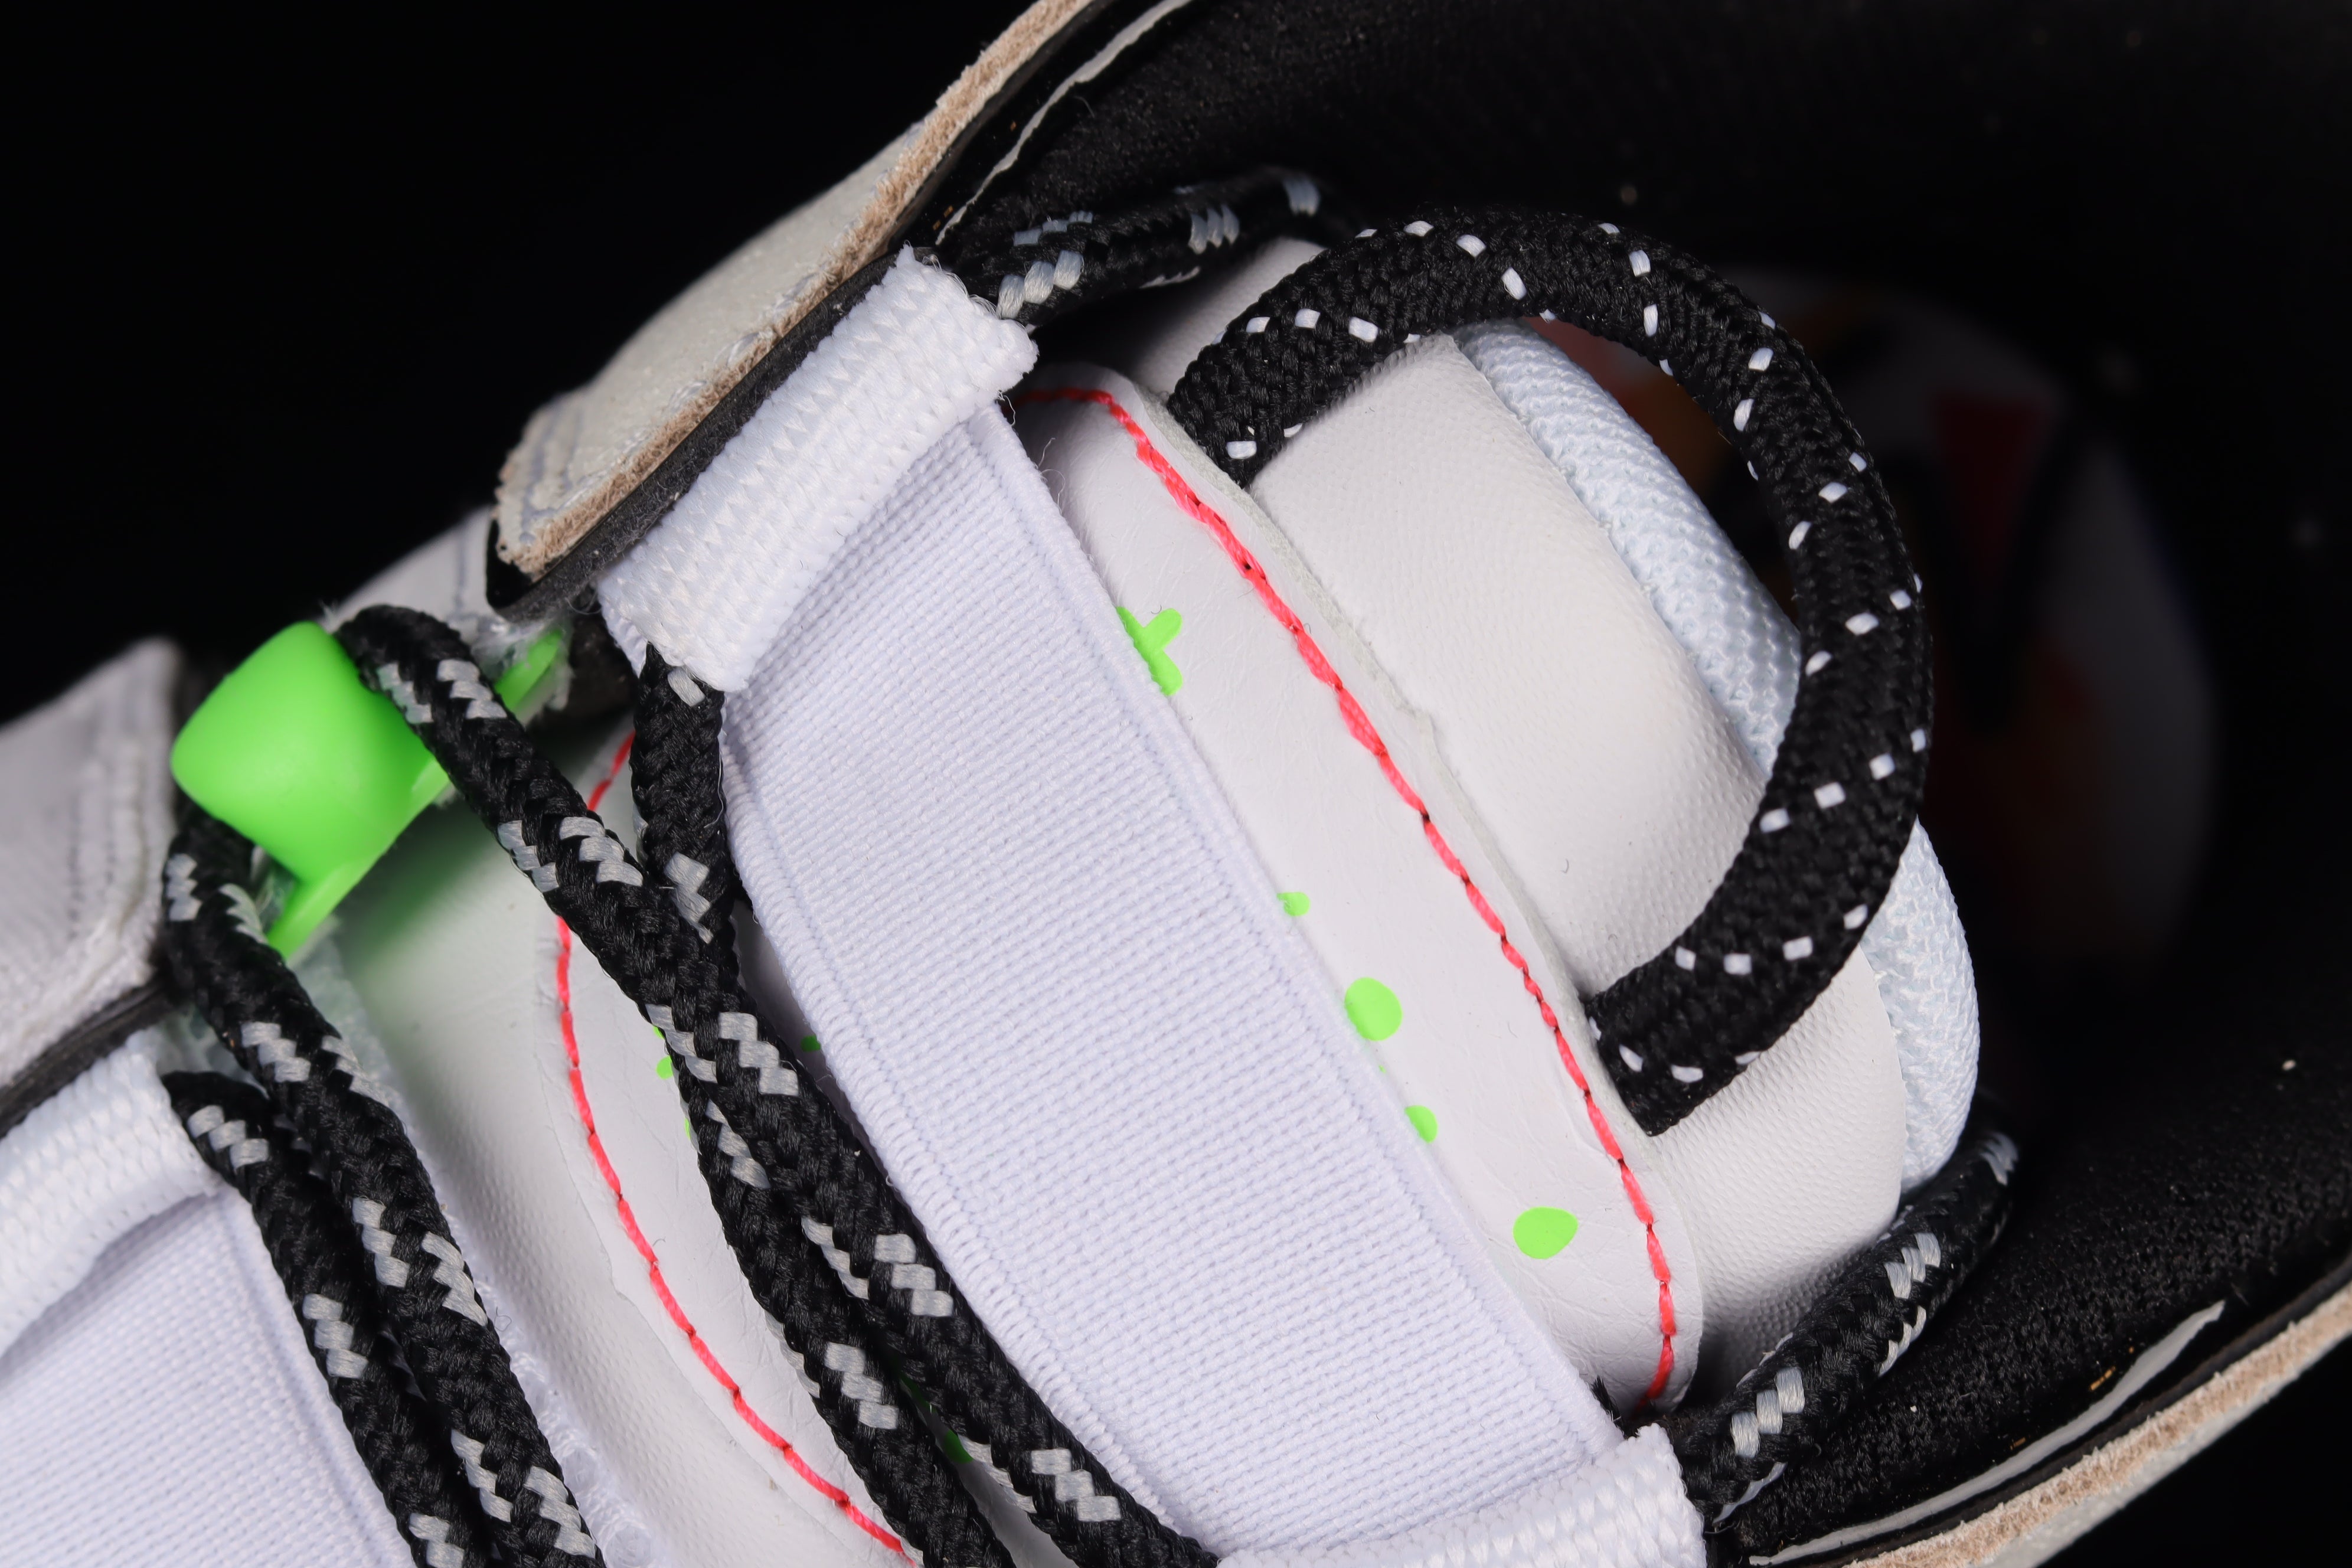 NikeMens Air More Uptempo - Gradient Midsoles